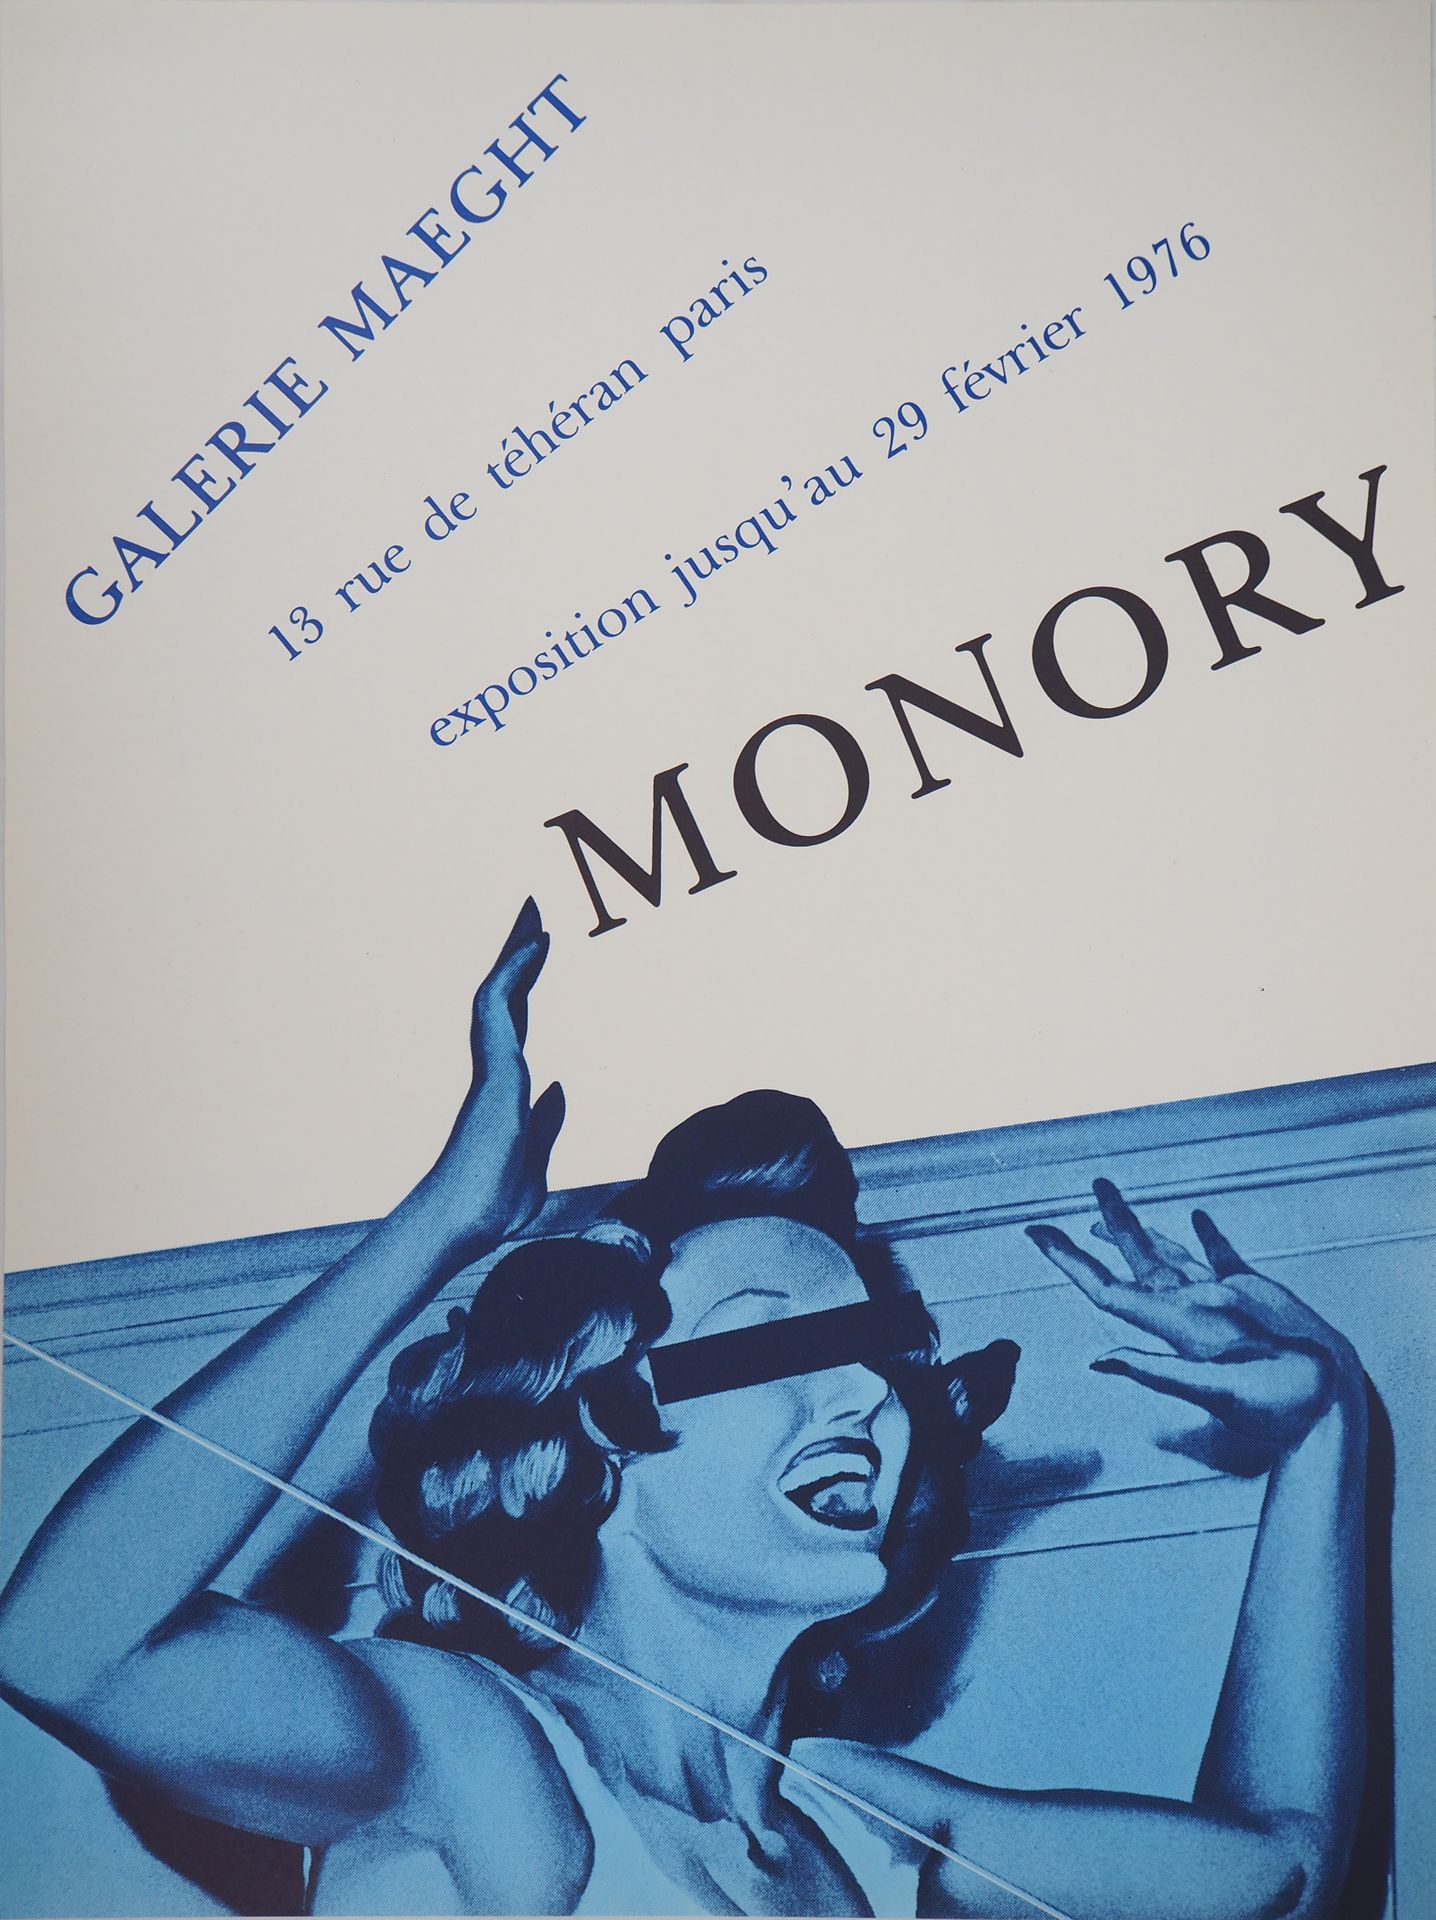 Jacques MONORY 雅克-莫诺里

惊讶的女孩, 1976



原创复古石版画海报（直接色调印刷）

纸上60 x 45厘米

1976年迈格特画廊&hellip;